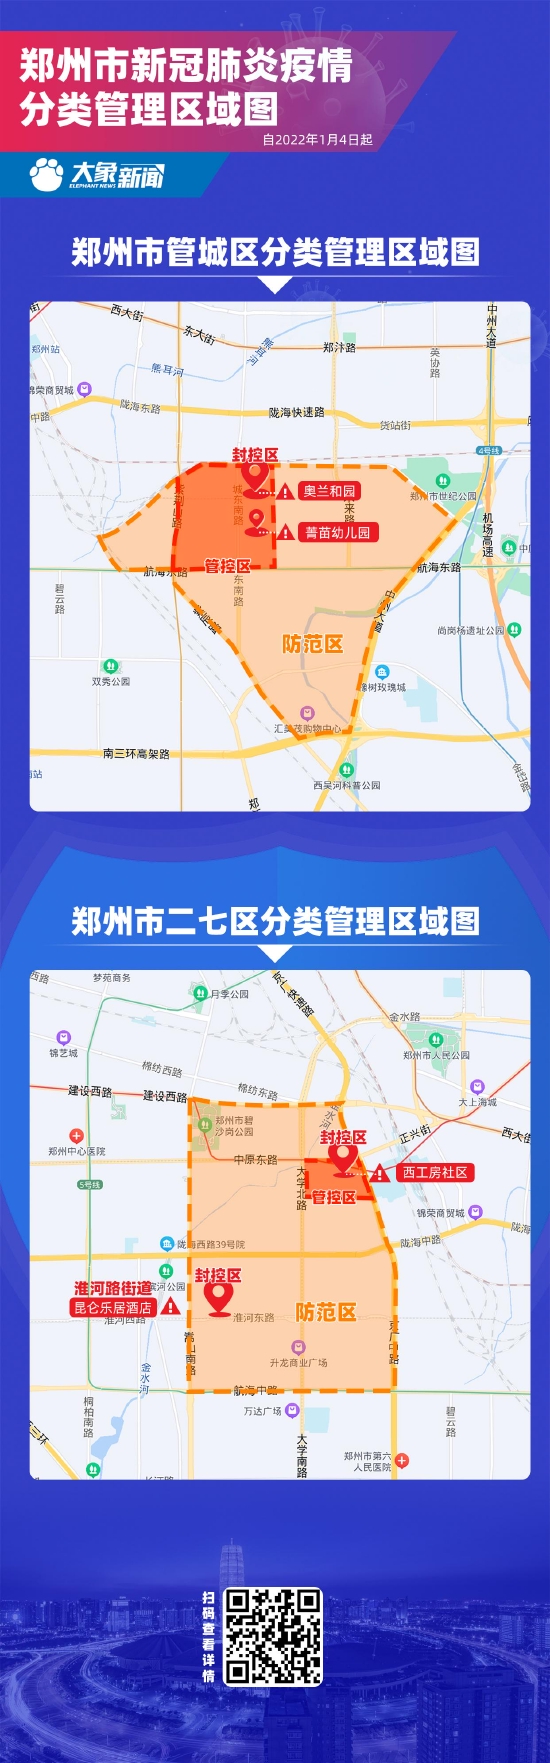 图解|郑州市新冠肺炎疫情分类管理区域